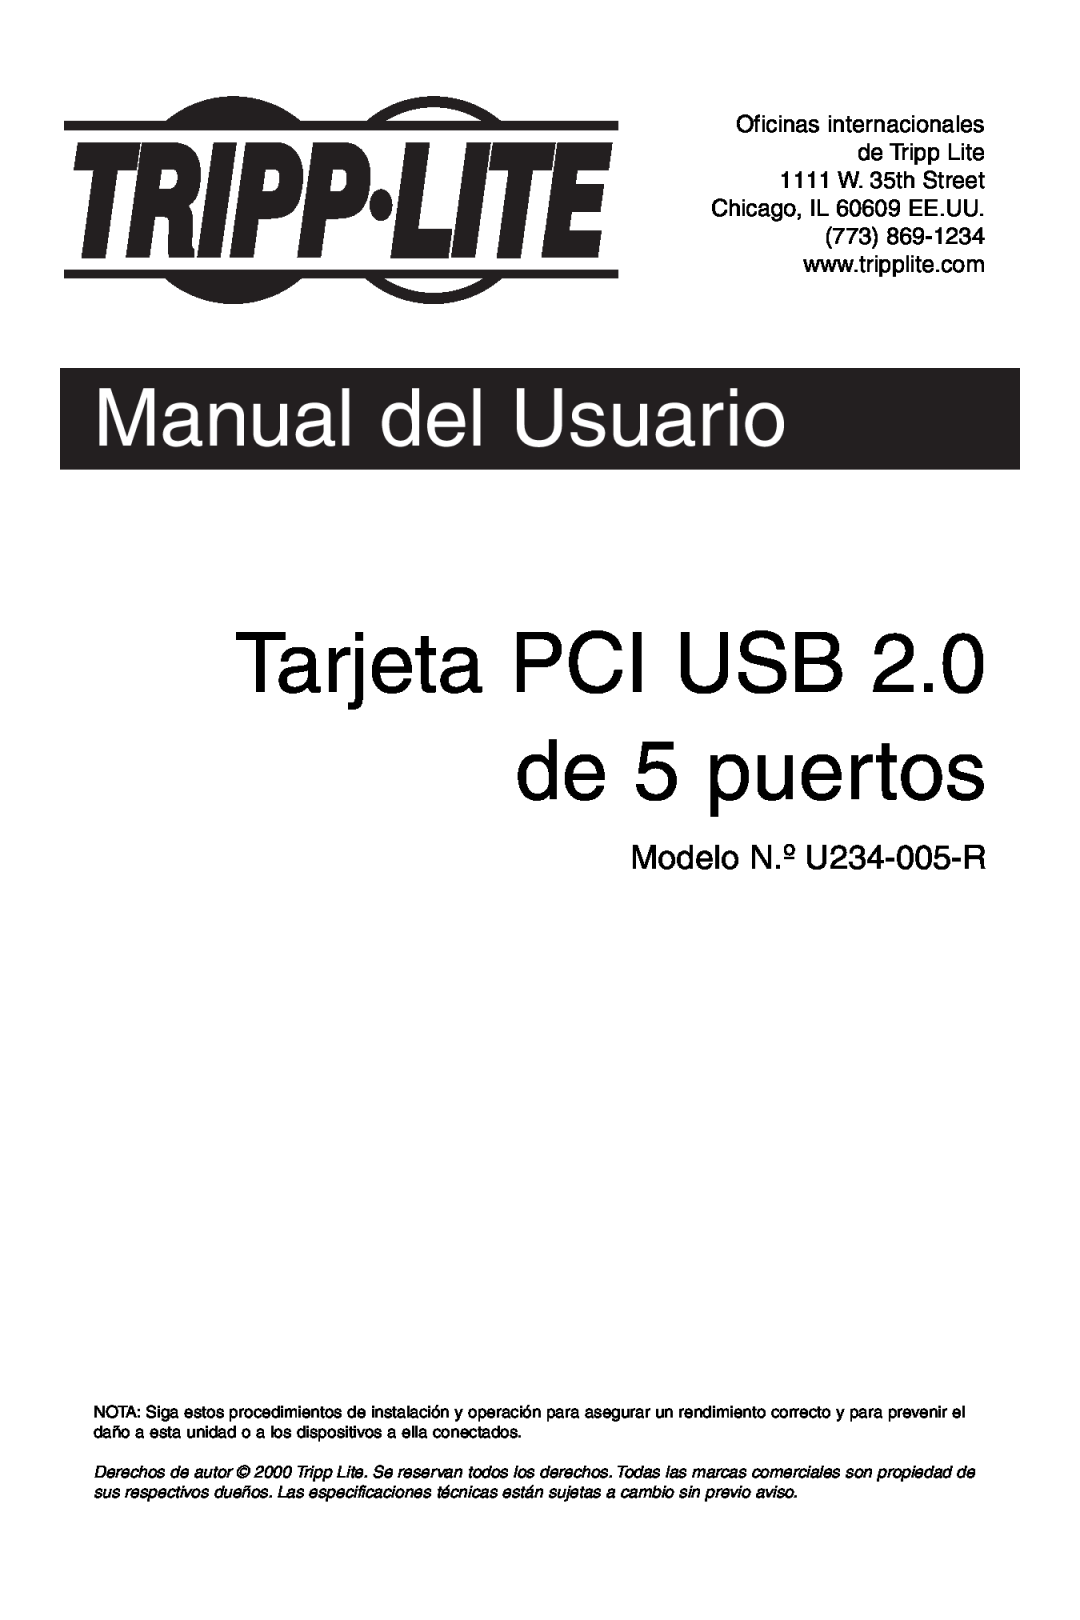 Tripp Lite U234-005-R user manual Tarjeta PCI USB 2.0 de 5 puertos, Manual del Usuario 